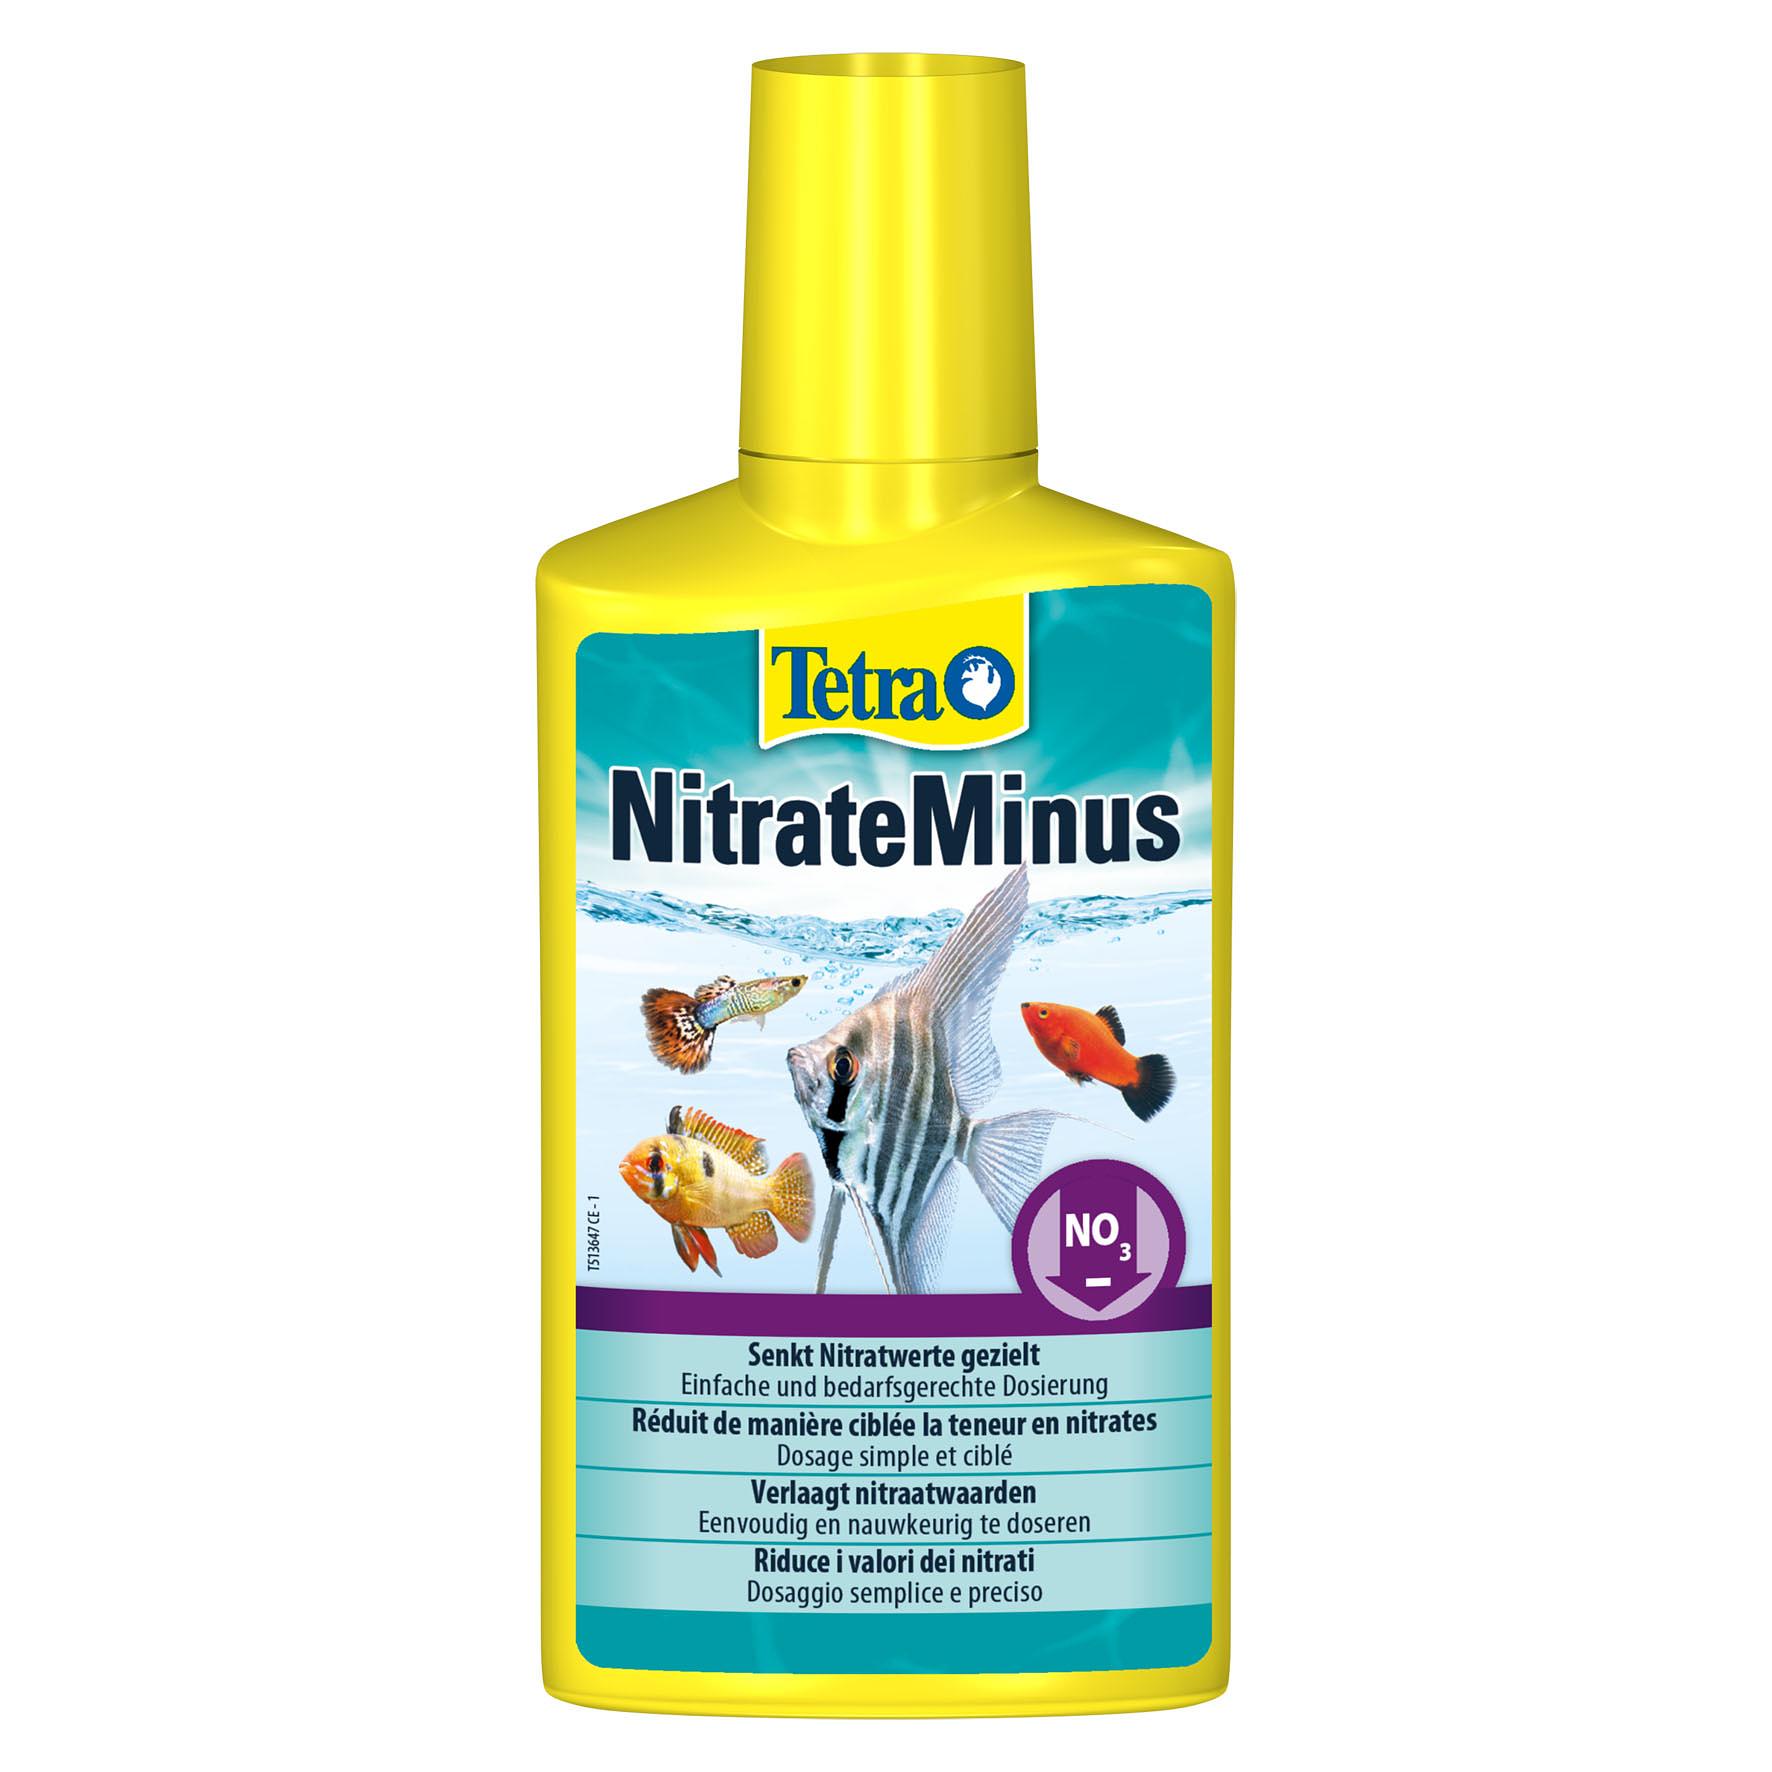 Tetra NitrateMinus liquid